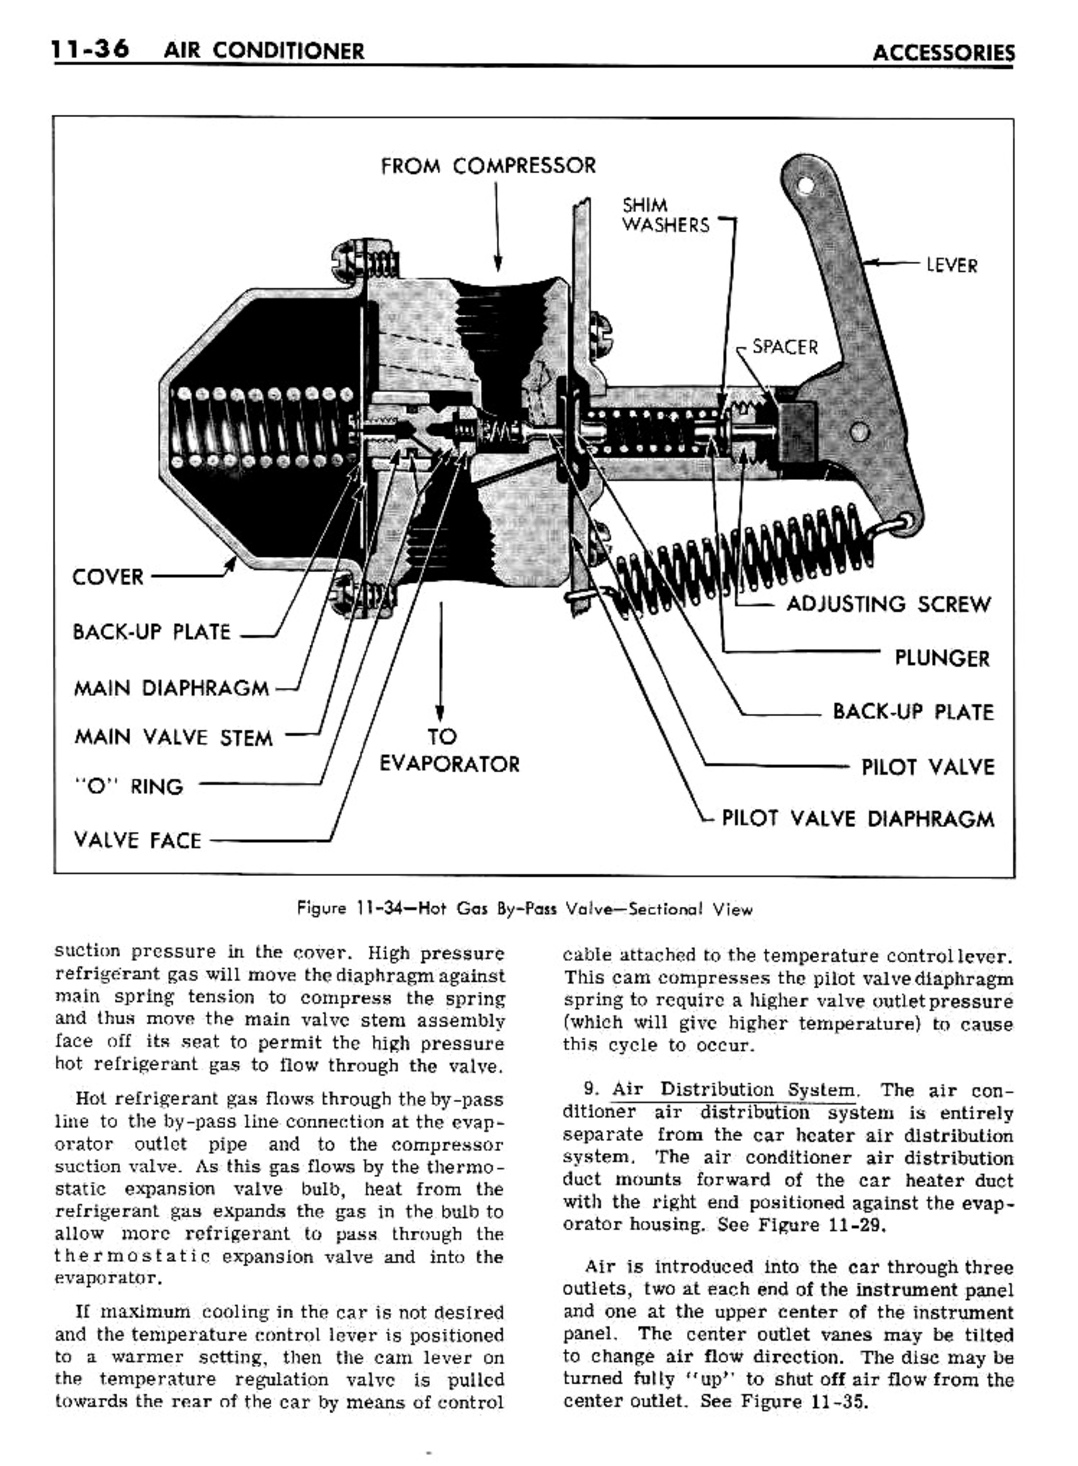 n_11 1961 Buick Shop Manual - Accessories-036-036.jpg